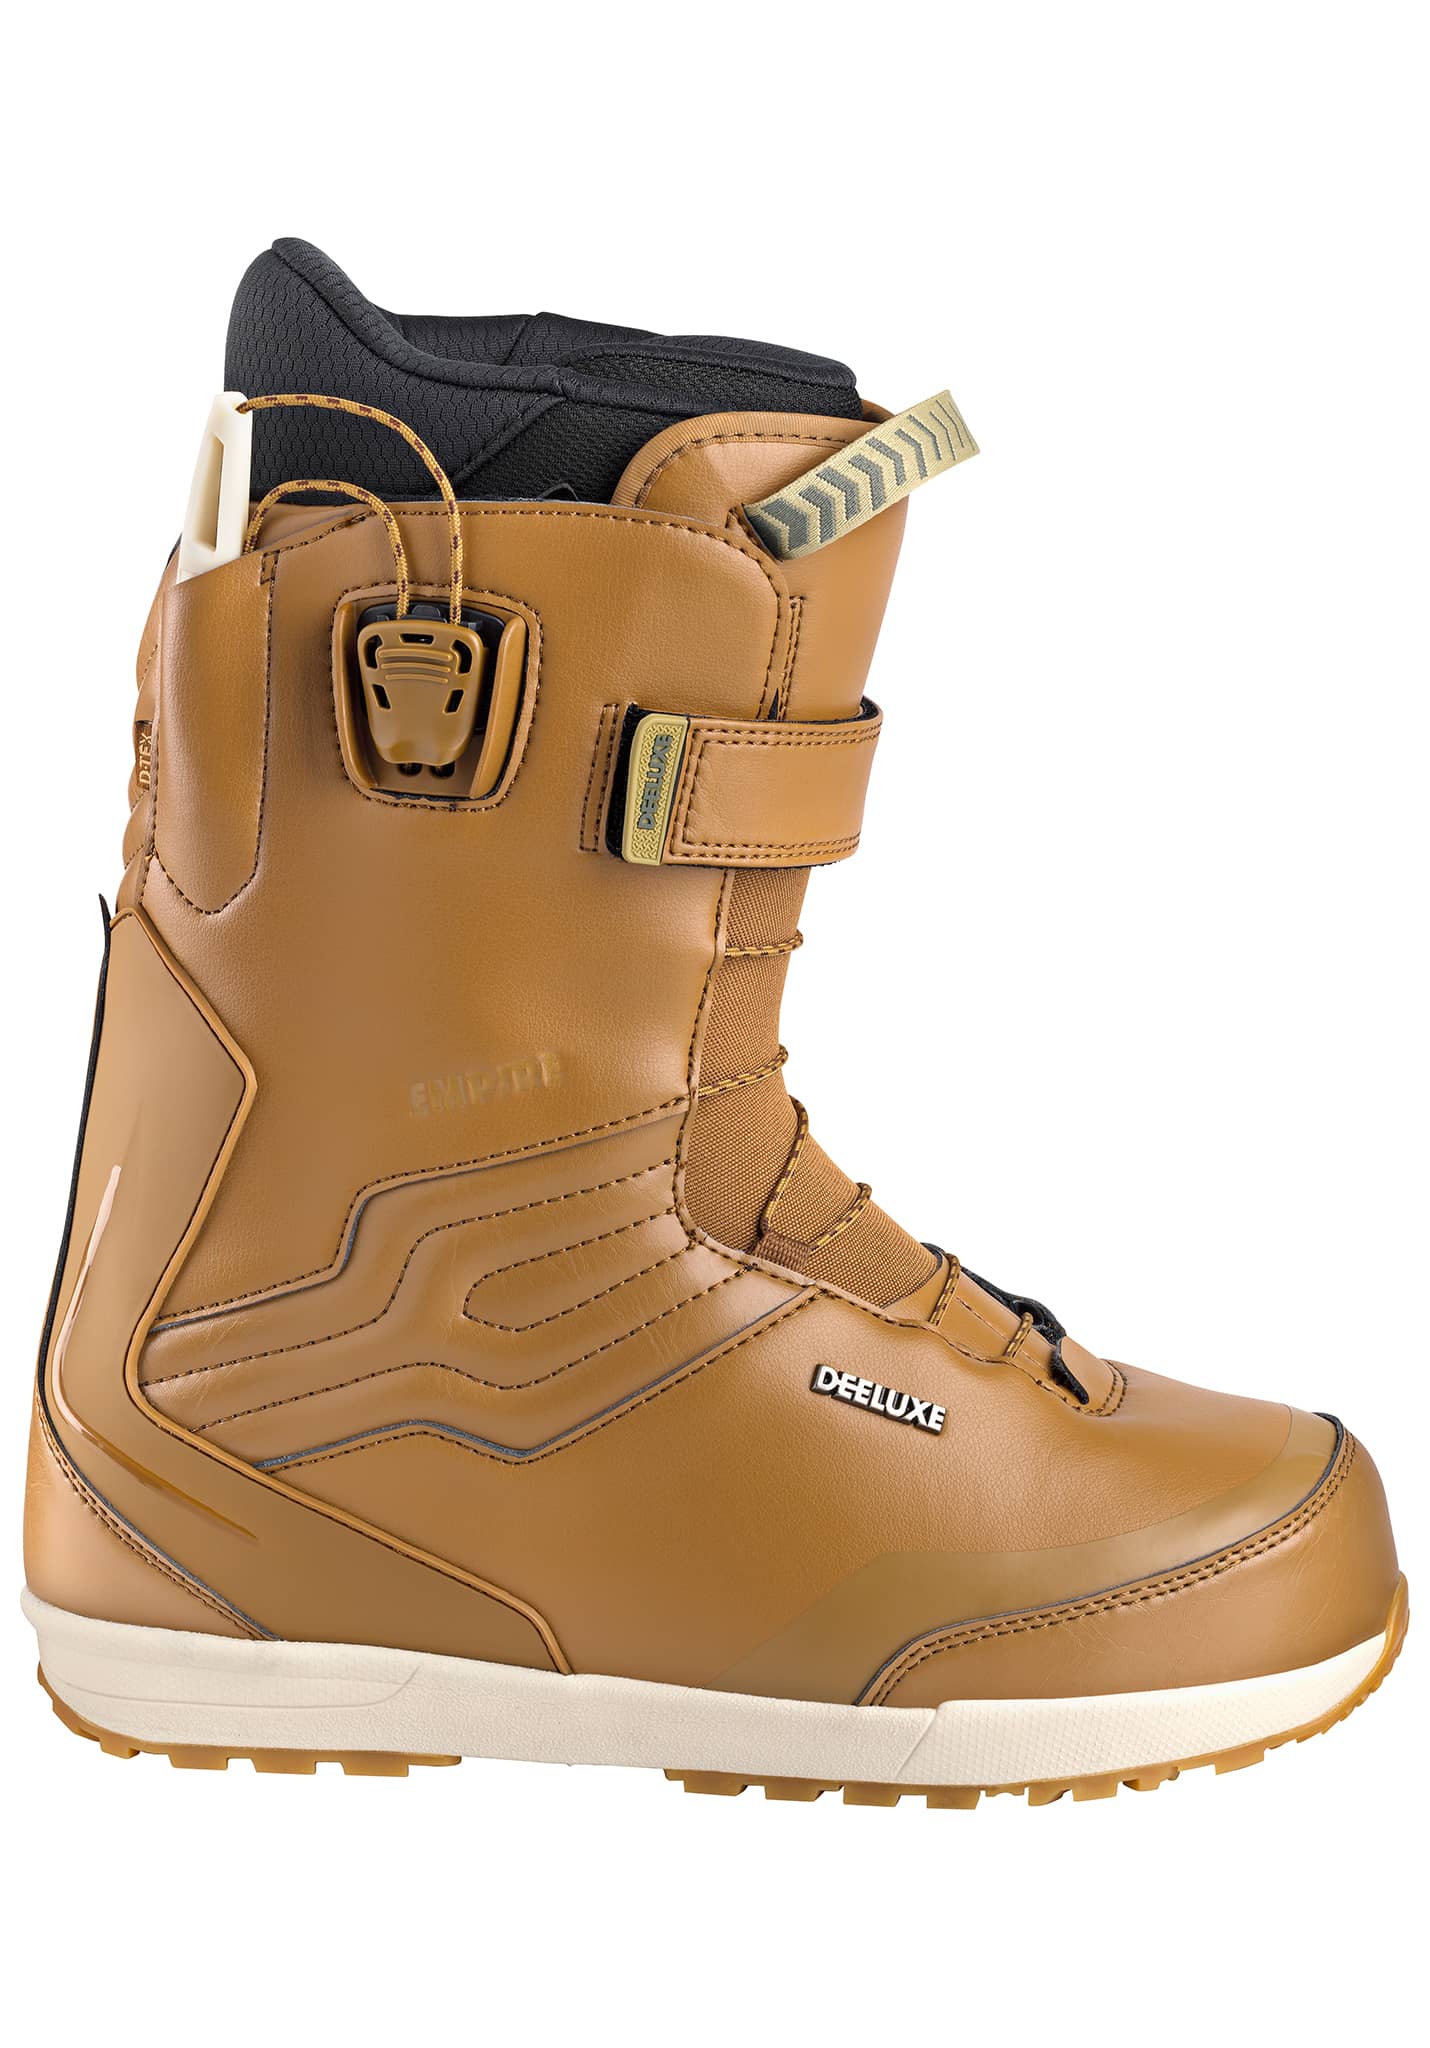 Deeluxe Empire PF Snowboard Boots brown 47